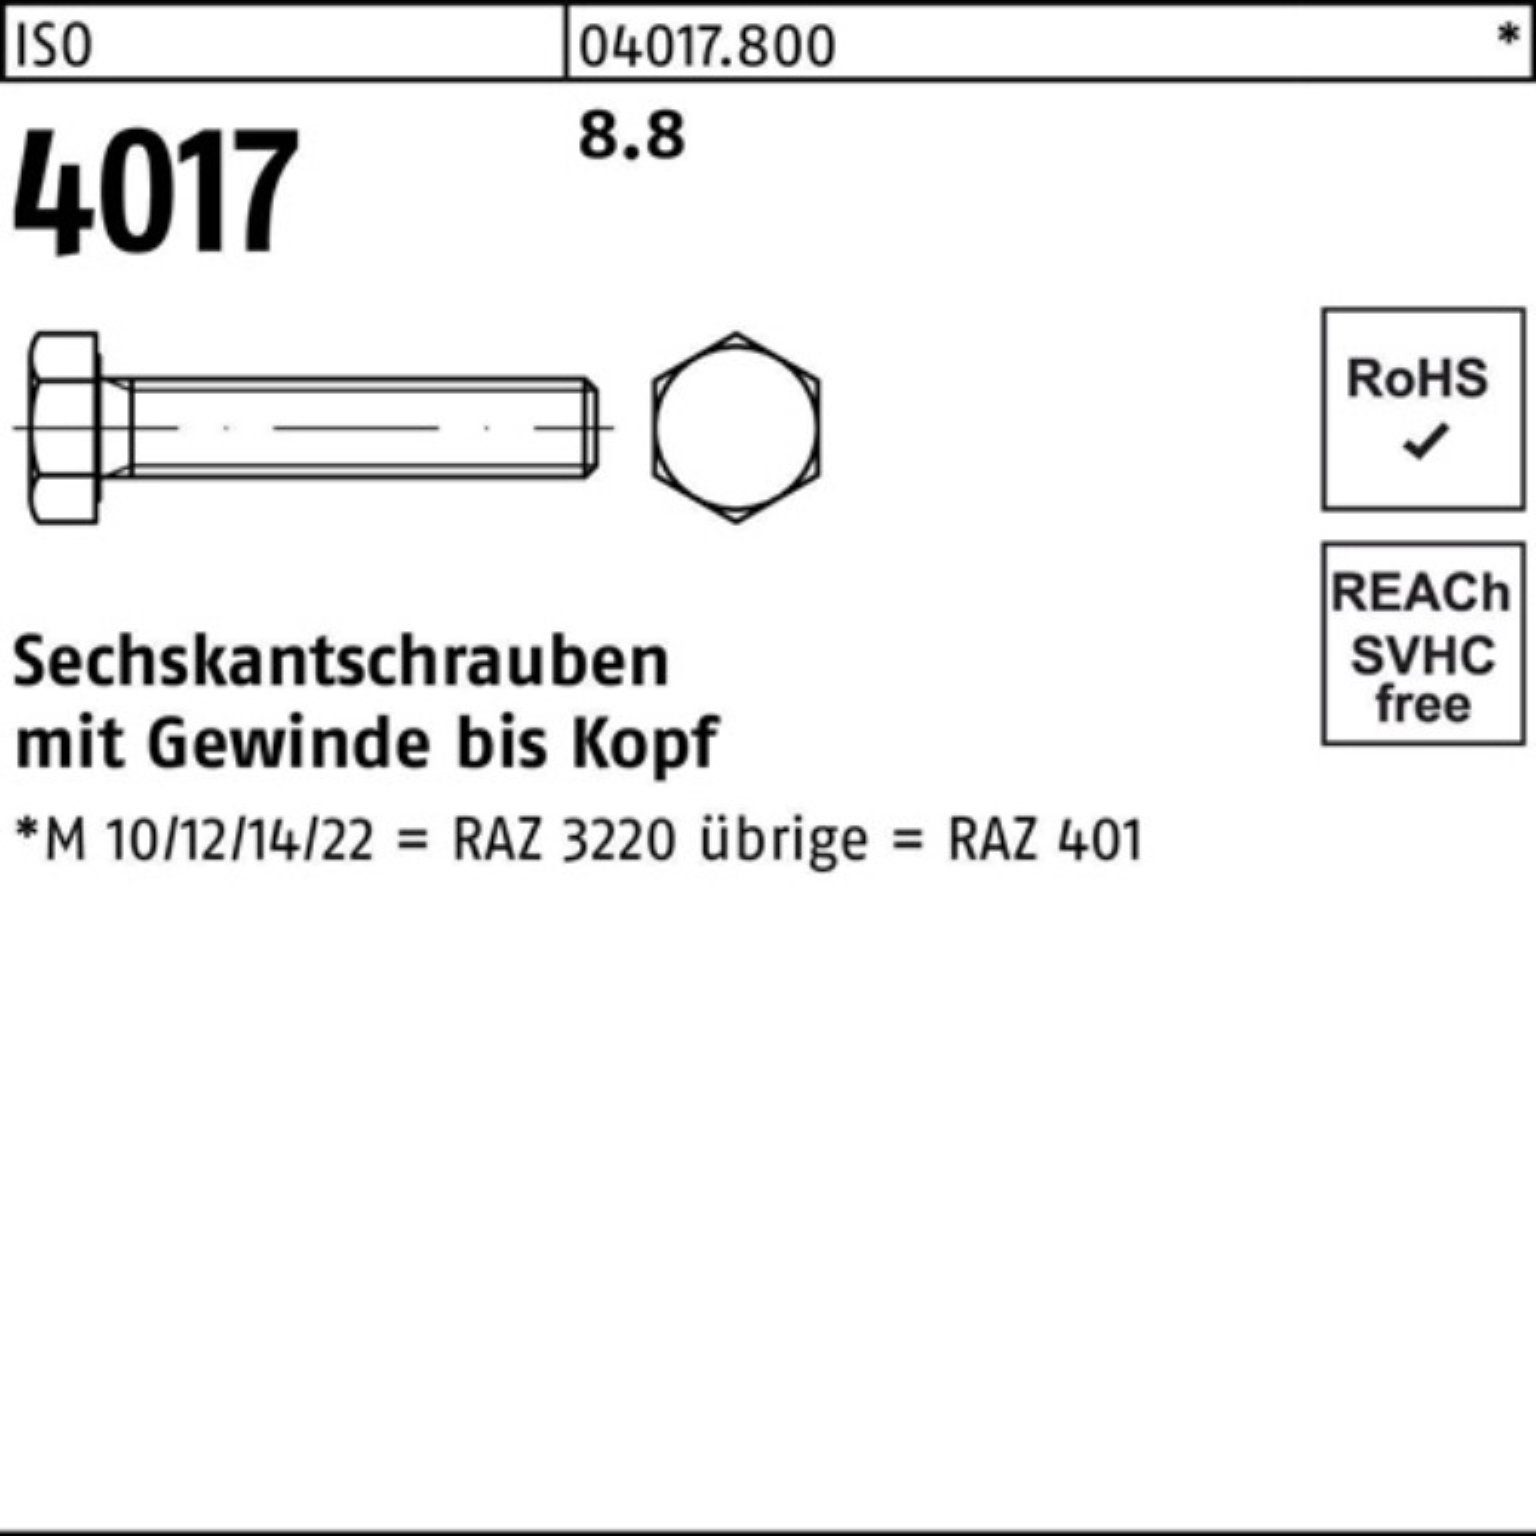 [Preise wurden überarbeitet] Bufab Sechskantschraube Stück Pack ISO M42x 8.8 401 VG Sechskantschraube 4017 ISO 130 100er 1